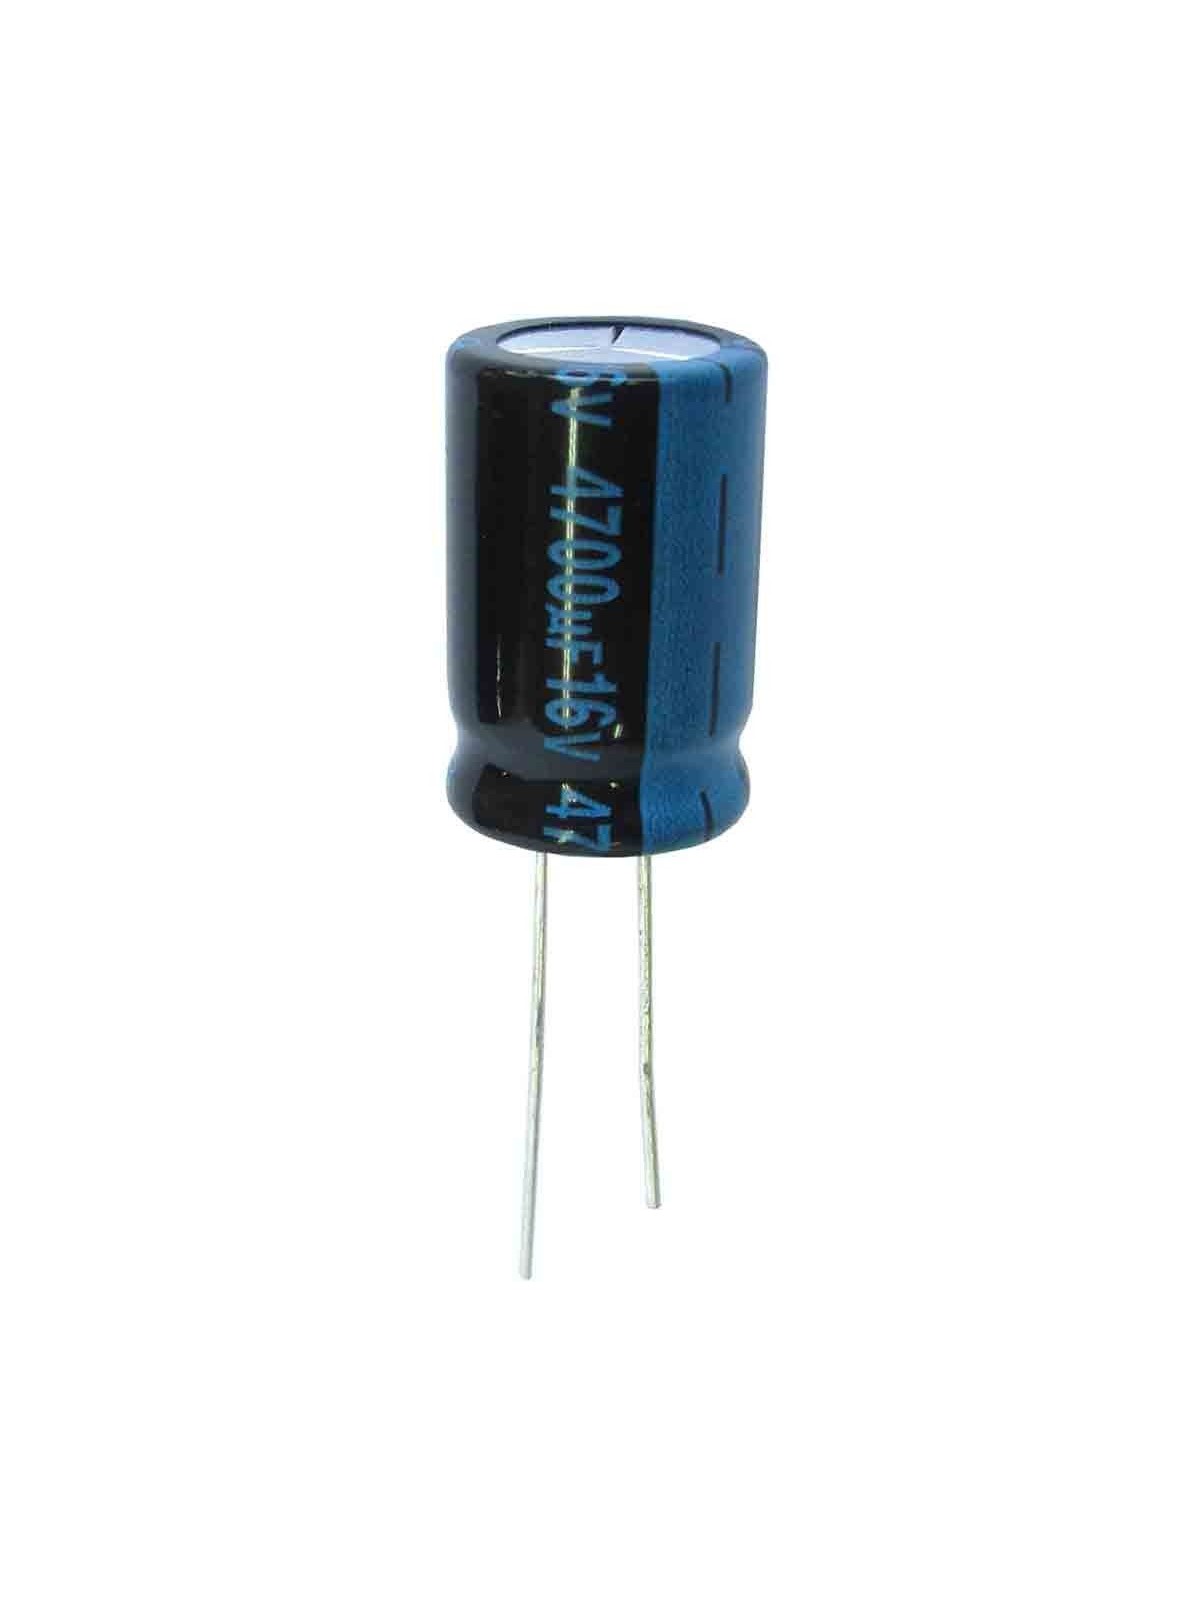 Condensador electrolítico 4.700 microfaradios, 16V